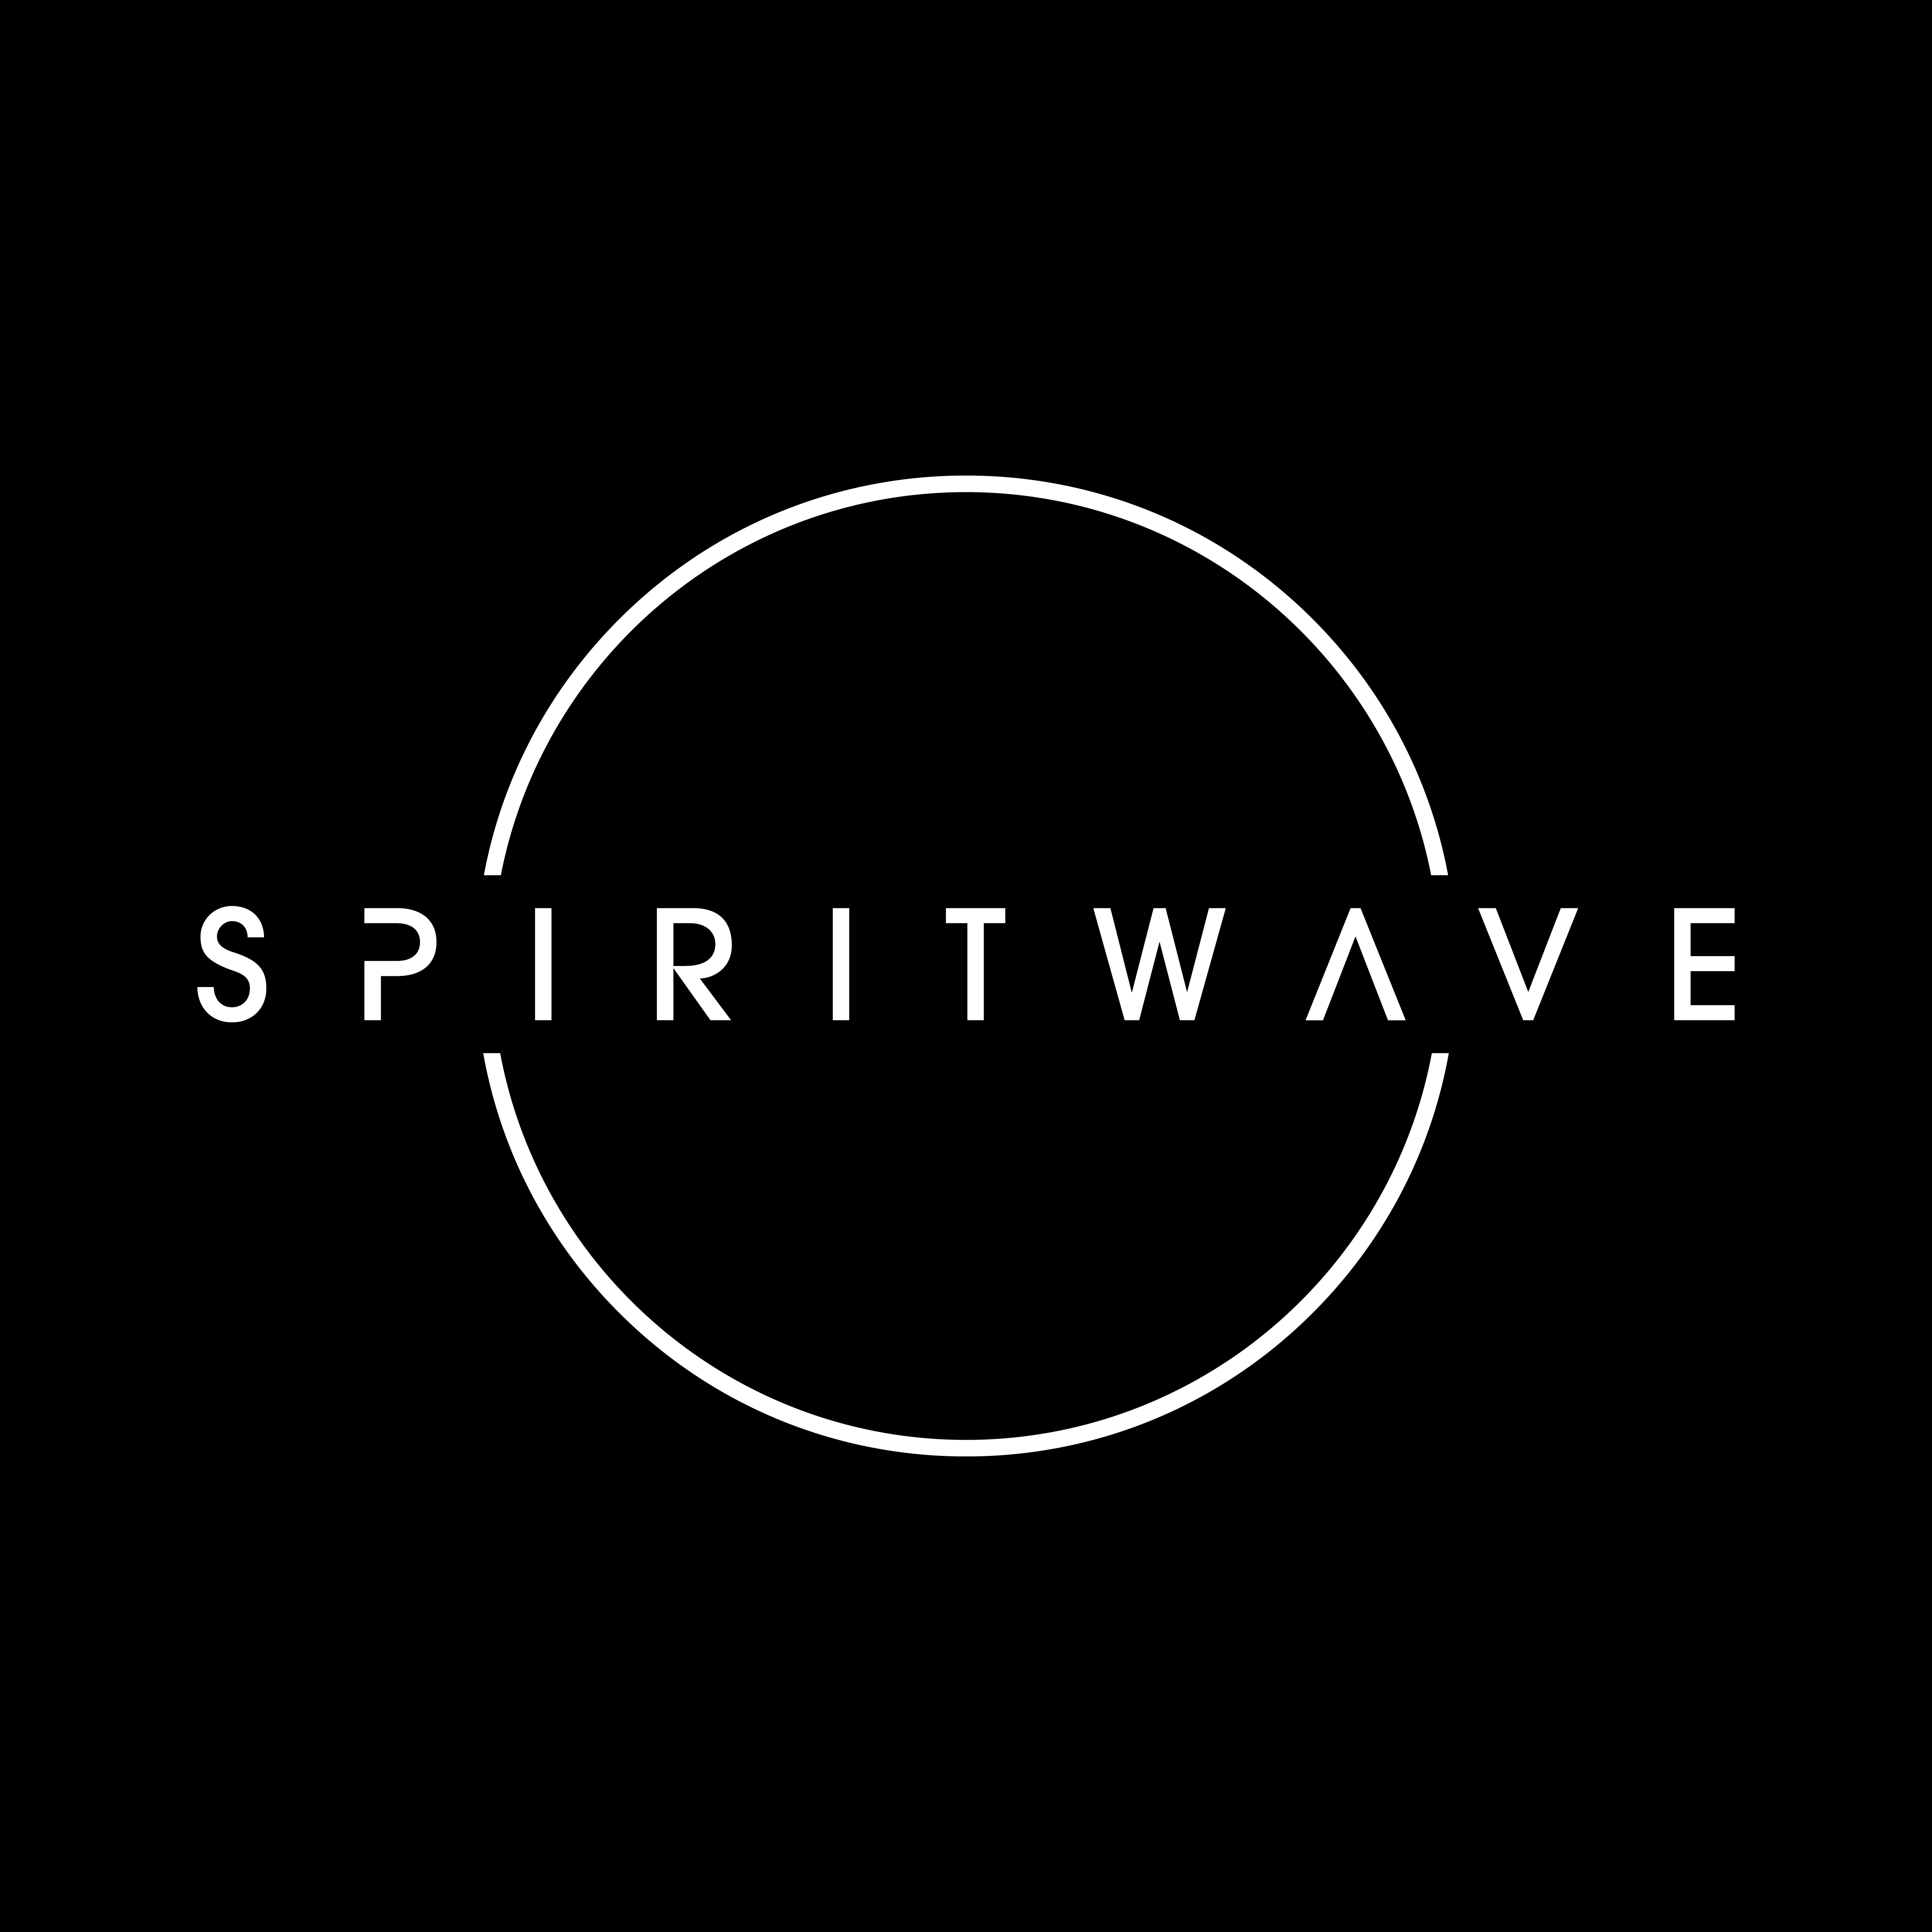 Spiritwave Digital